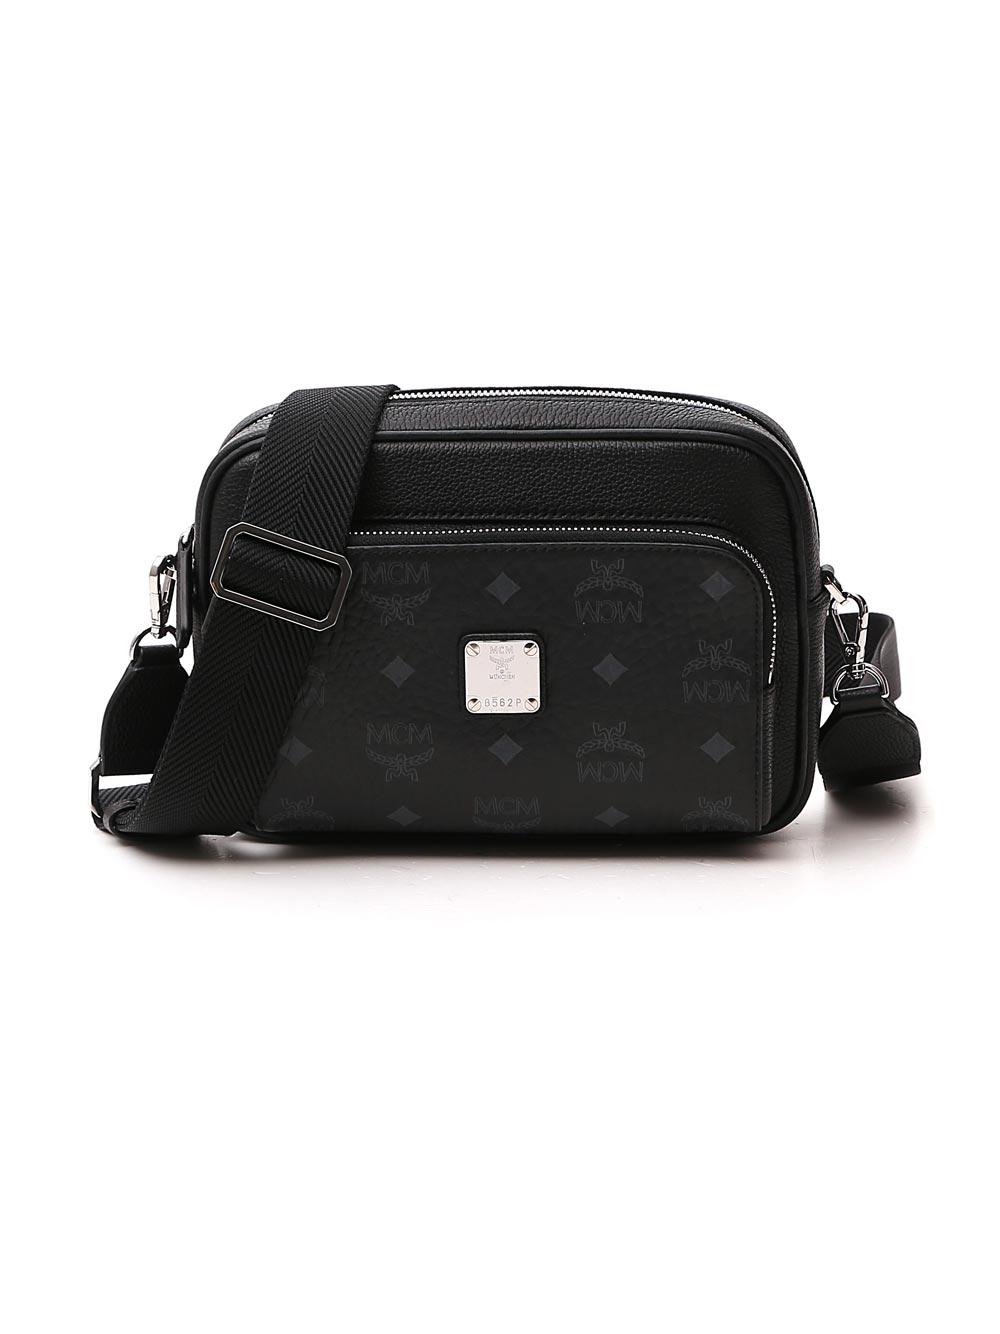 MCM Leather Klassik Visetos Crossbody Bag in Black - Lyst